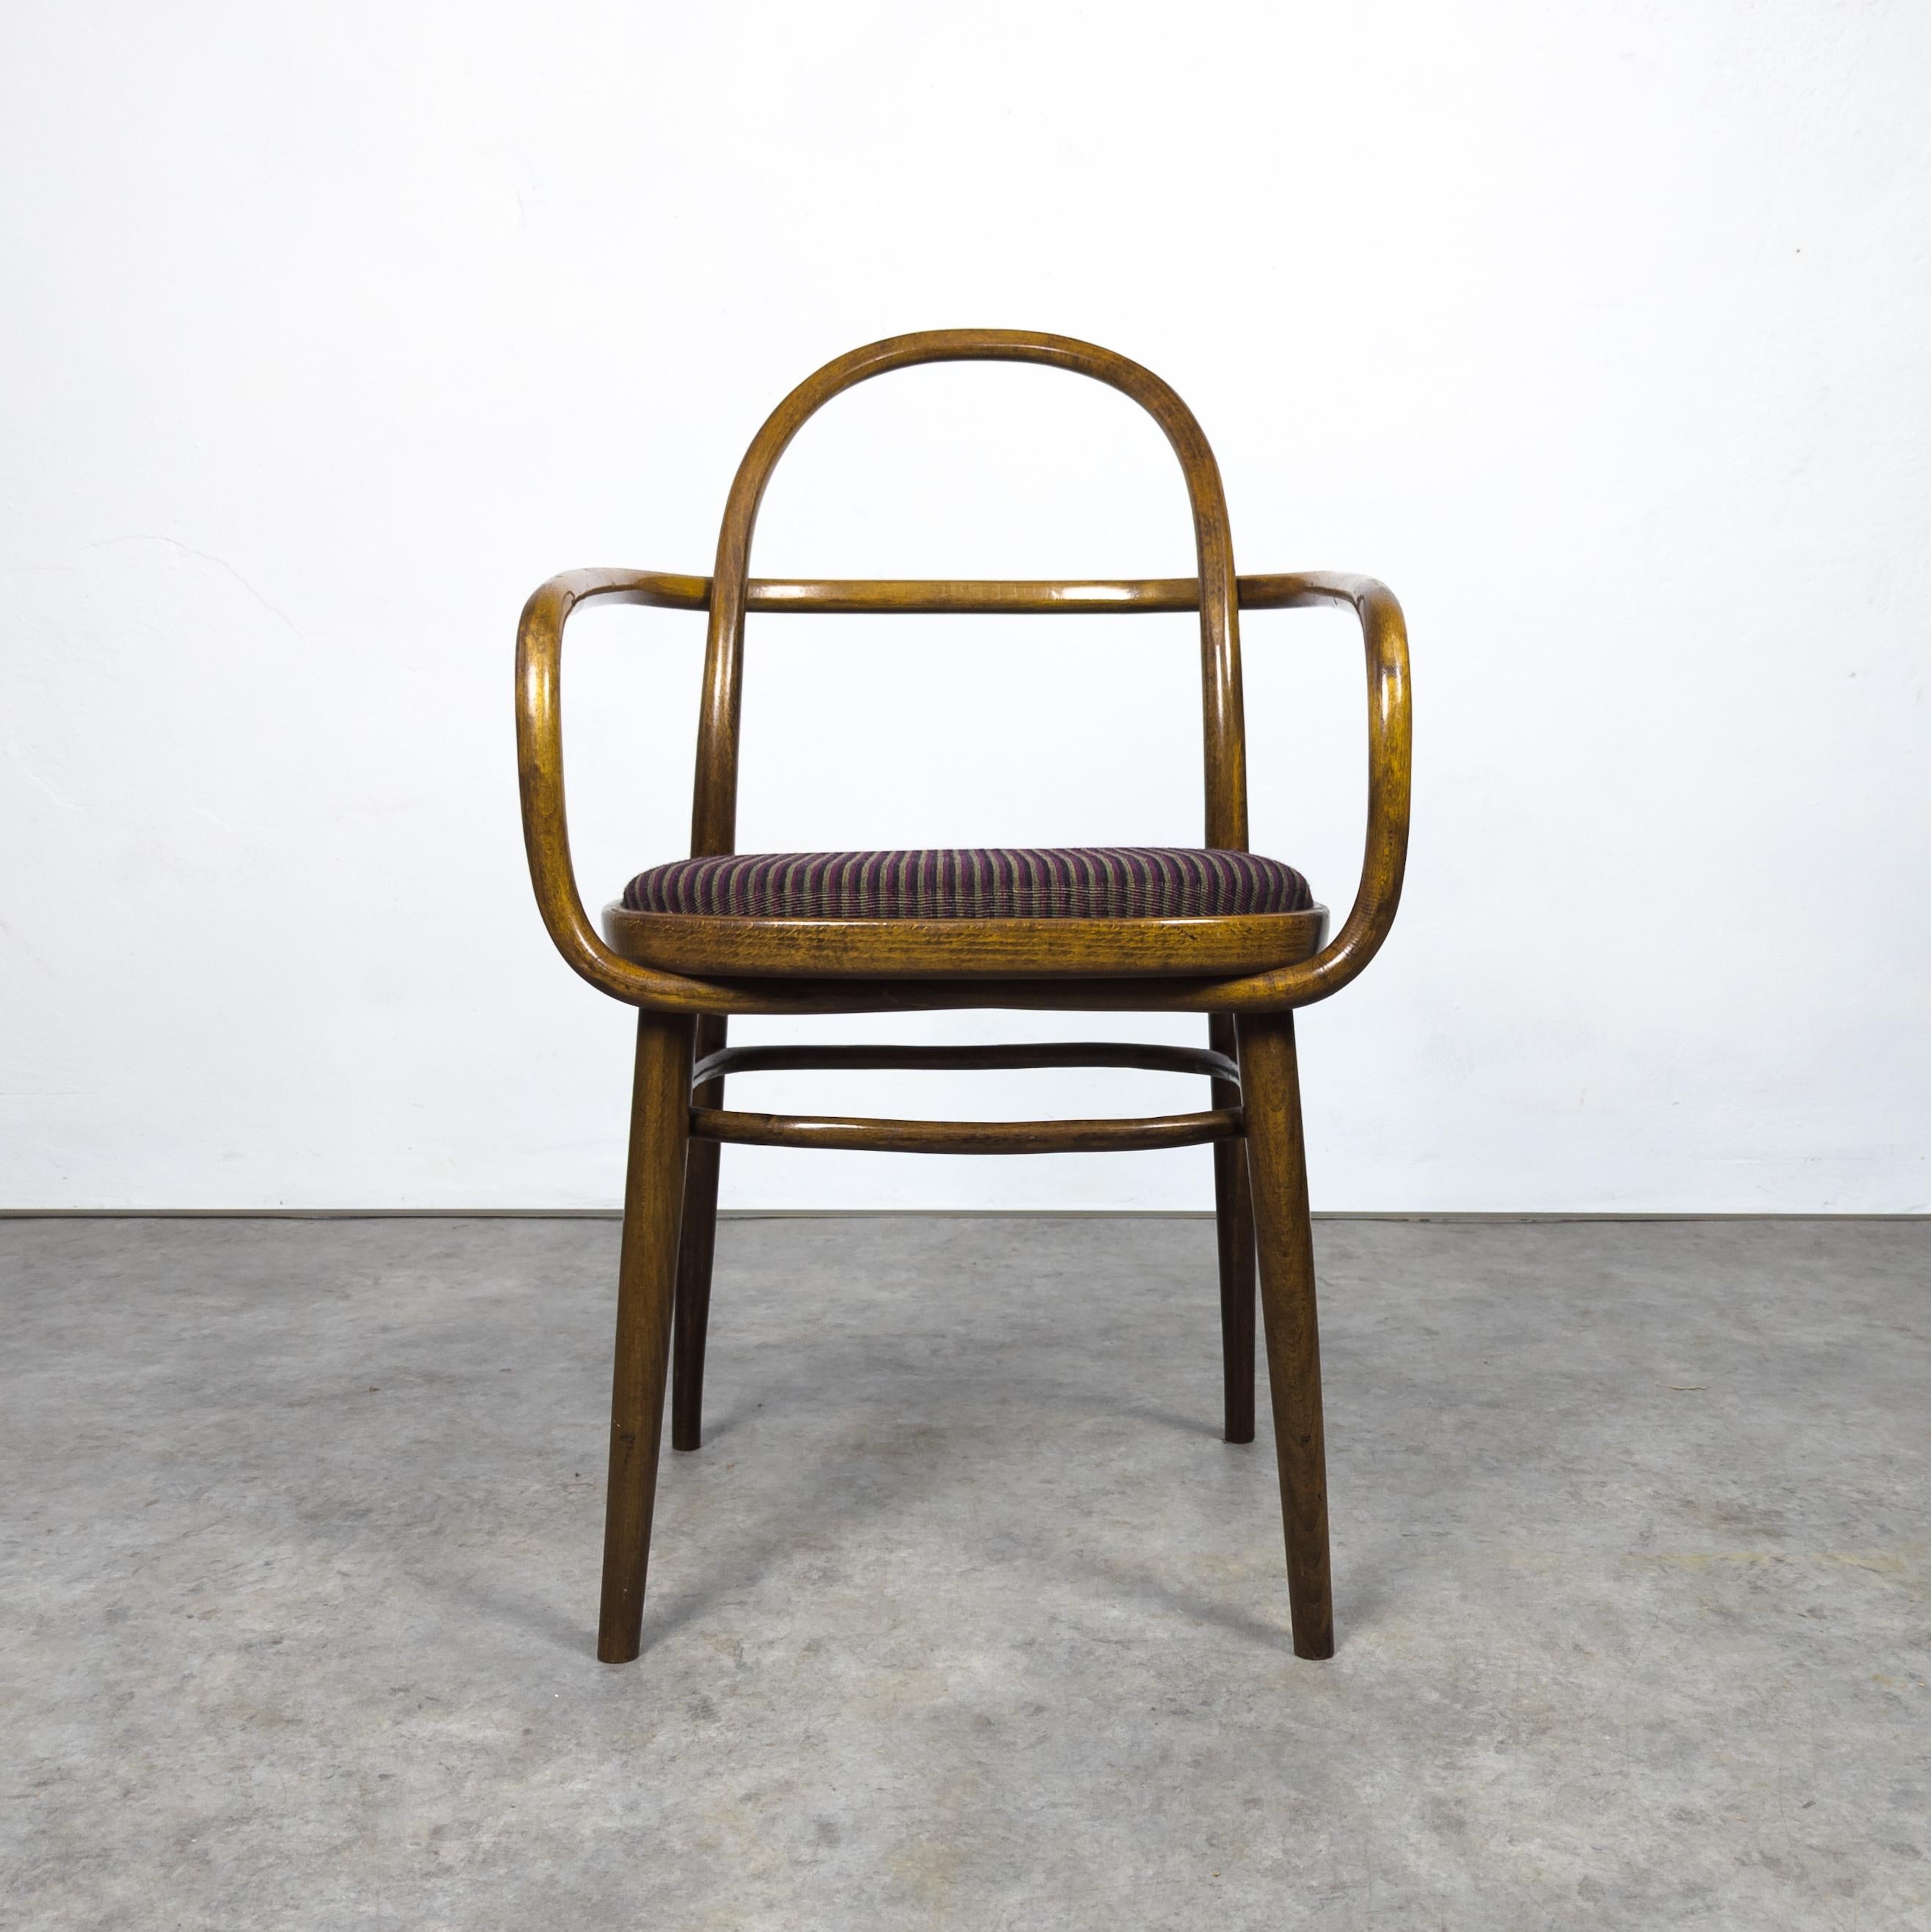 Äußerst seltener Stuhl, entworfen von Radomir Hofman für Ton im Jahr 1967 für die EXPO-Ausstellung in Toronto. Diese Stühle wurden eigens für dieses Ereignis entworfen und Ende der 1960er Jahre von der Thonet-Nachfolgefirma TON in der ehemaligen